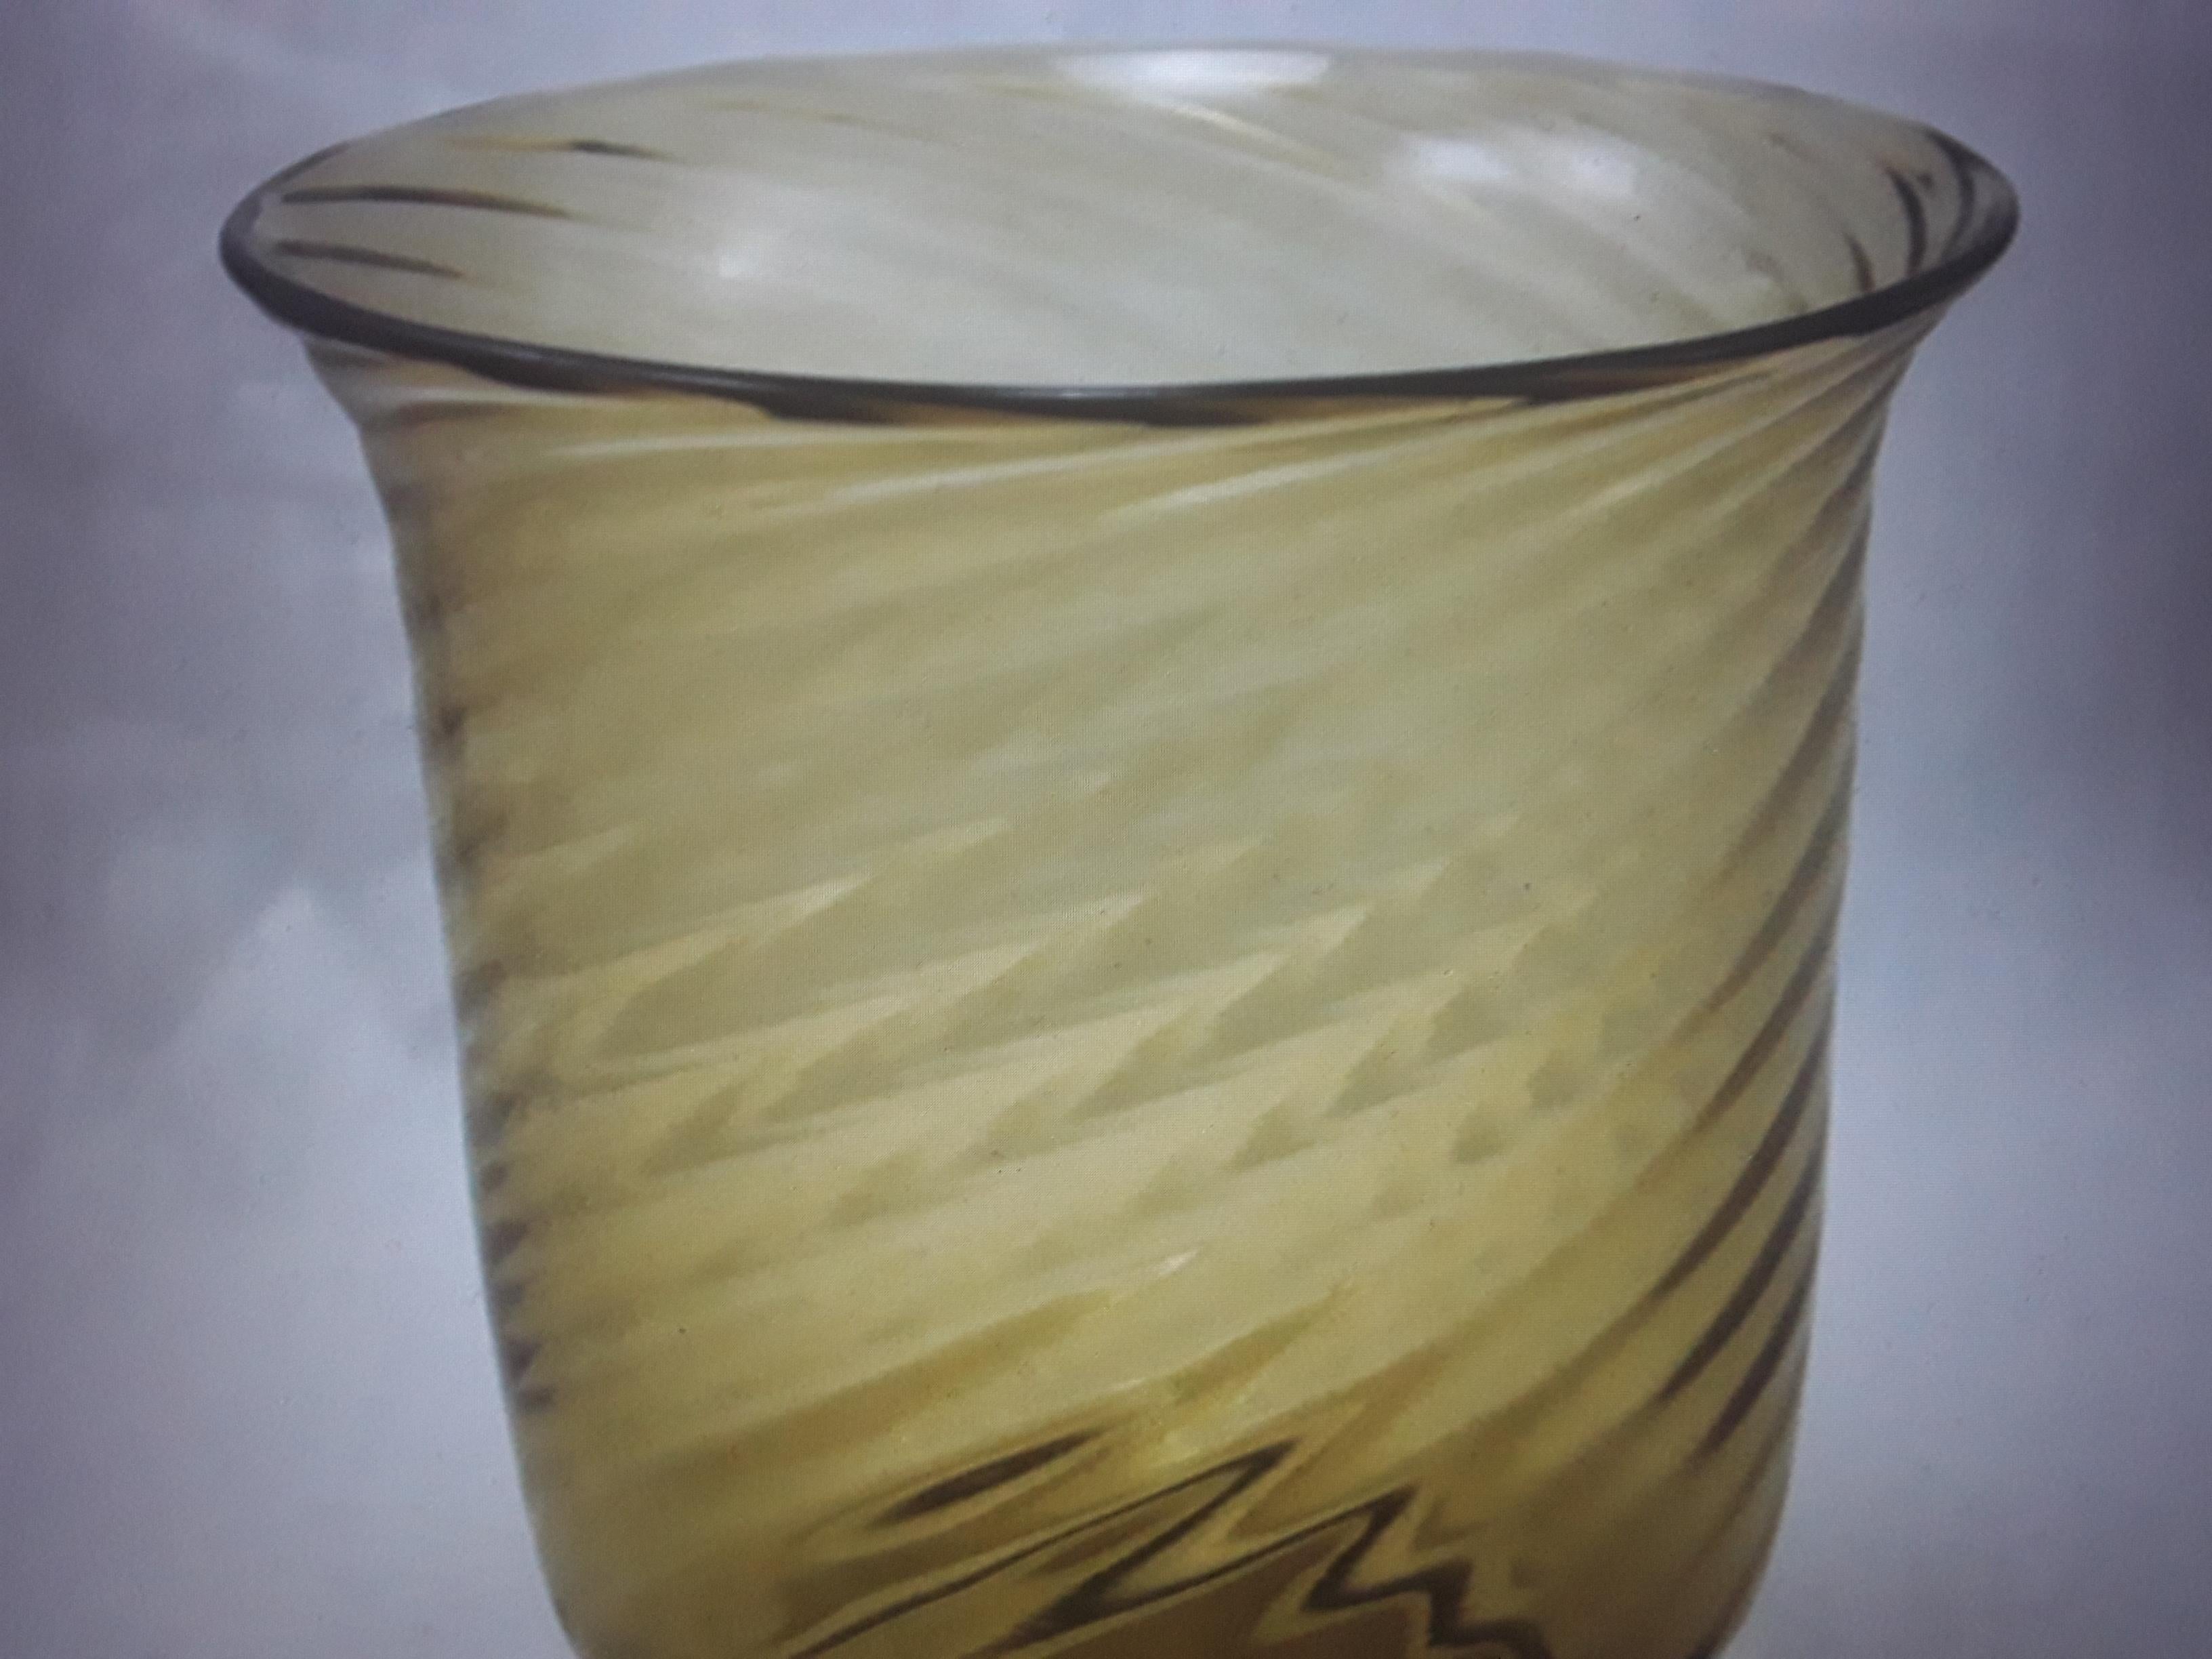 1930's Art Deco Frederic Carders Steuben Art Glass Swirl Muster Vase. Bernsteinfarben. Auf der Unterseite der Vase gibt es Kratzer, die nicht auffallen, wenn die Vase aufrecht steht.